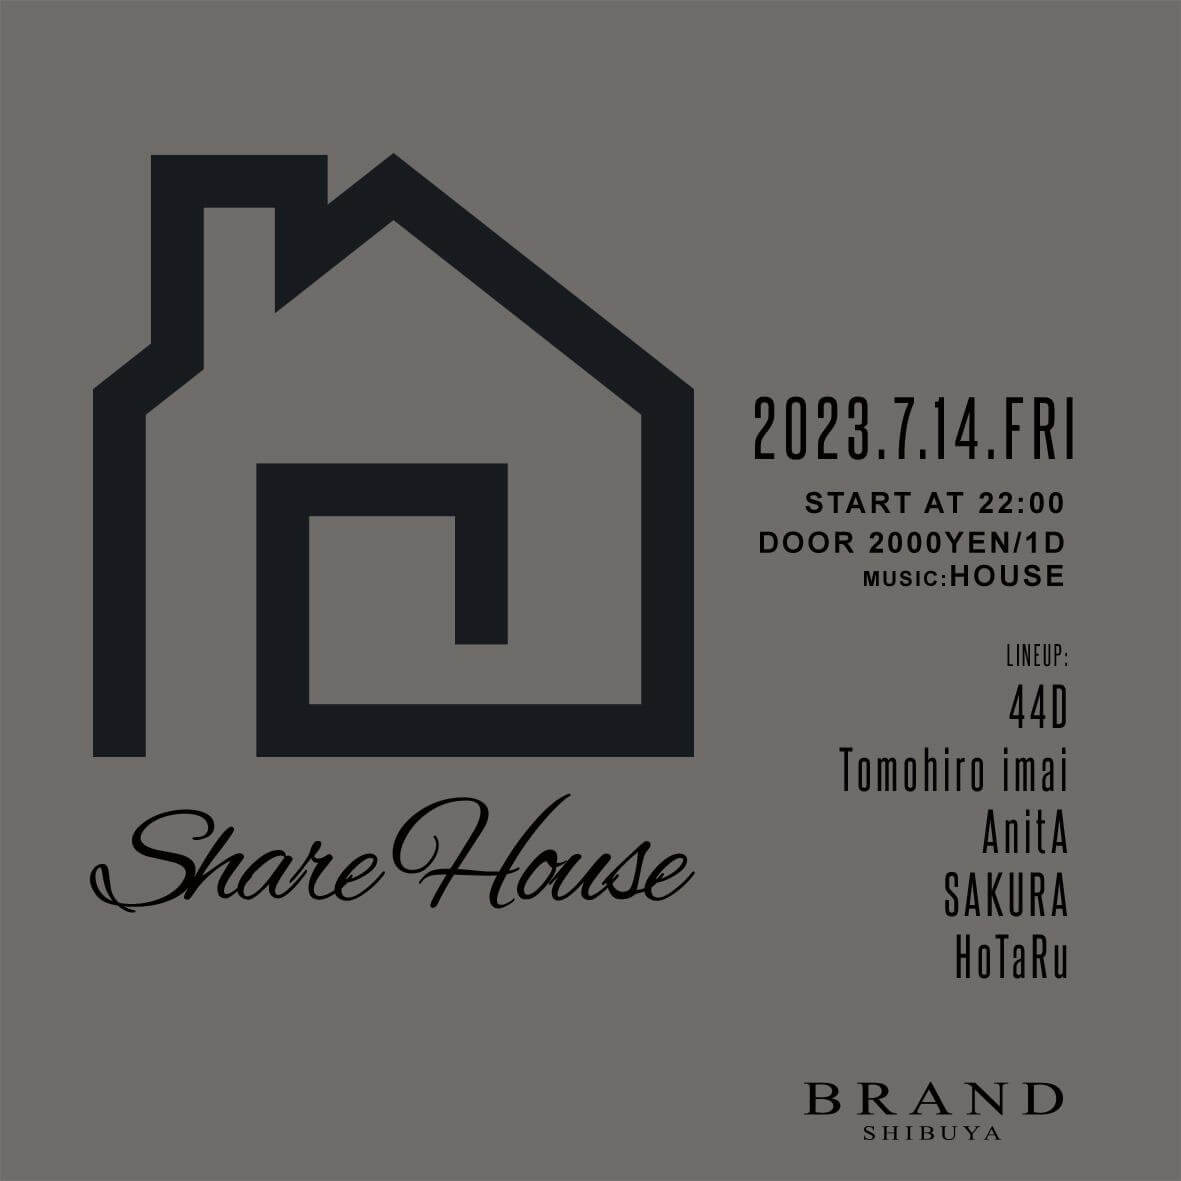 Share House 2023年07月14日（金曜日）に渋谷 クラブのBRAND SHIBUYAで開催されるHOUSEイベント